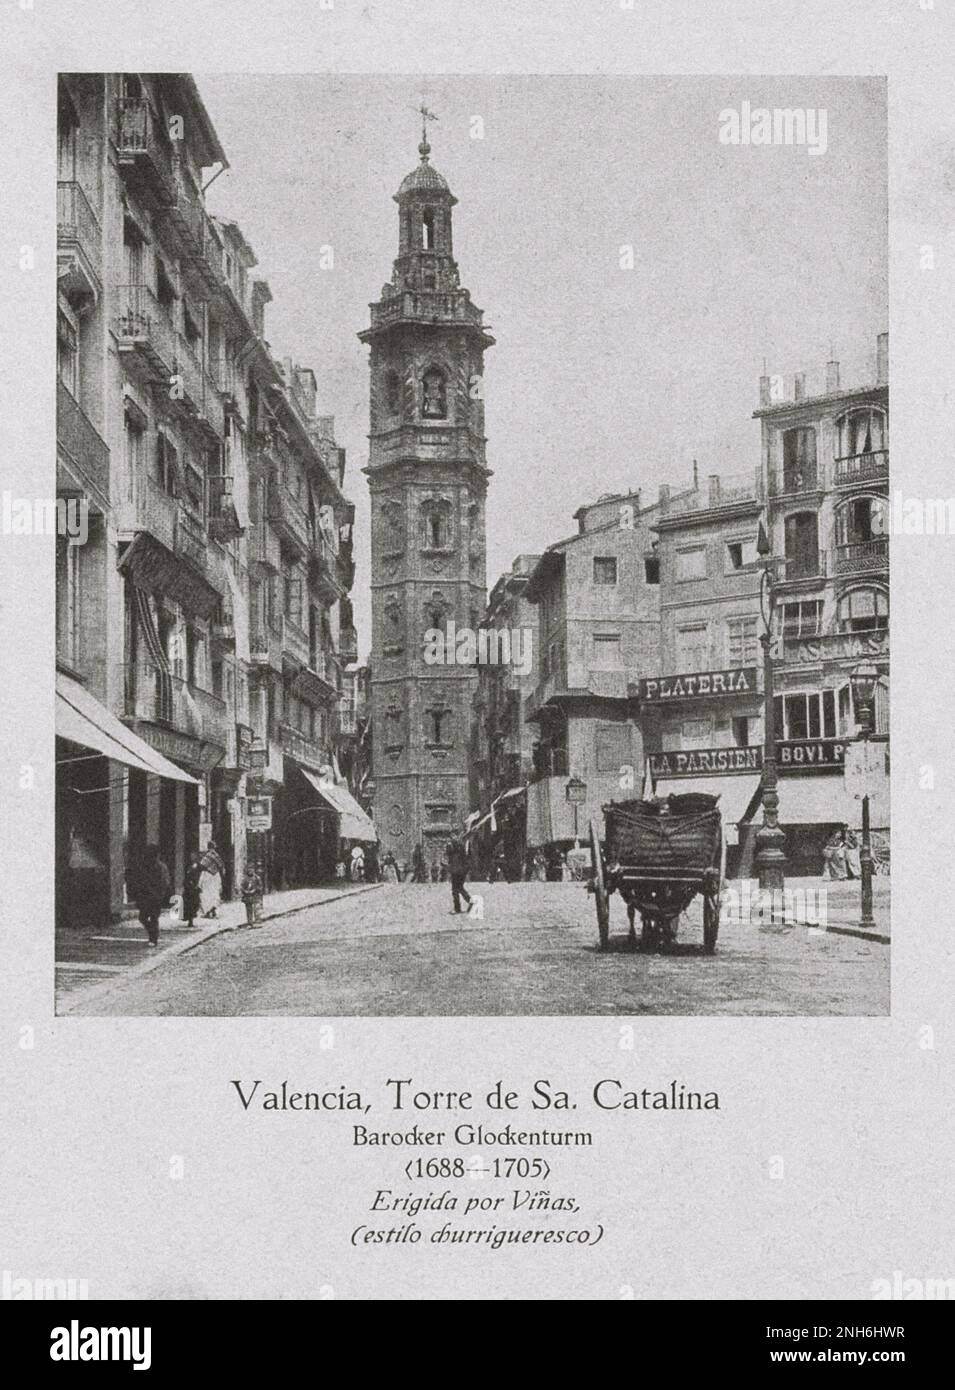 Architektur des alten Spaniens. Vintage-Foto von Santa Catalina (Torre de Sa. Catalina), Barockglockenturm. Valencia. Santa Catalina ist eine römisch-katholische Kirche im gotischen Stil in der Stadt Valencia, Spanien, am südlichen Ende der Plaza de la Reina. Stockfoto